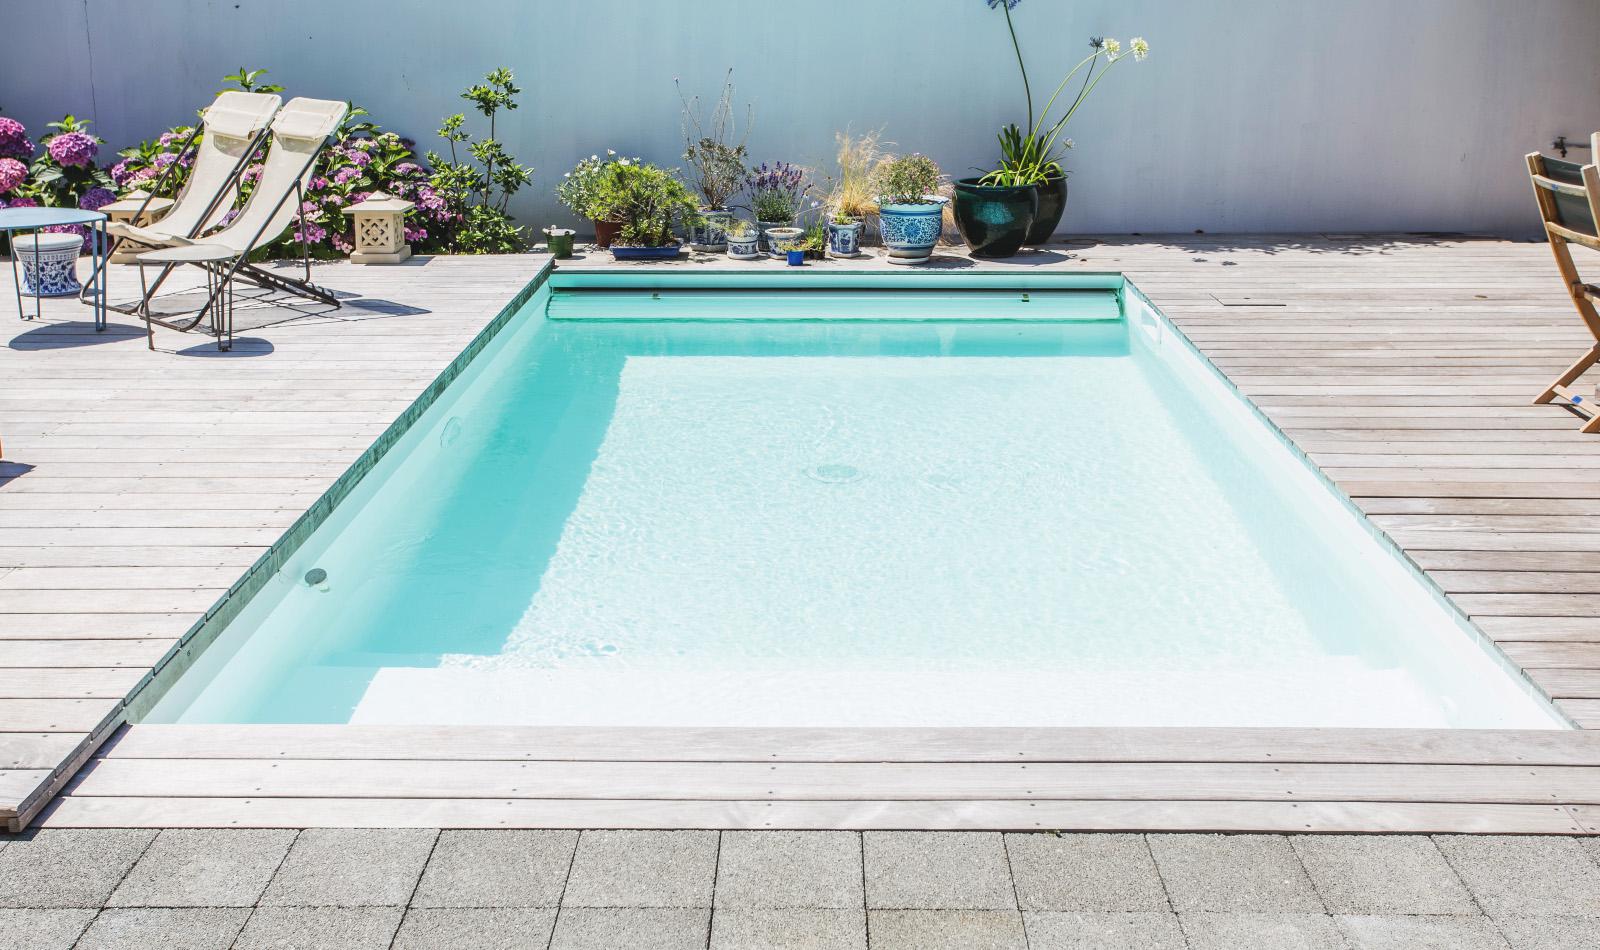 Comment construire votre propre piscine naturelle: guide d’autoconstruction